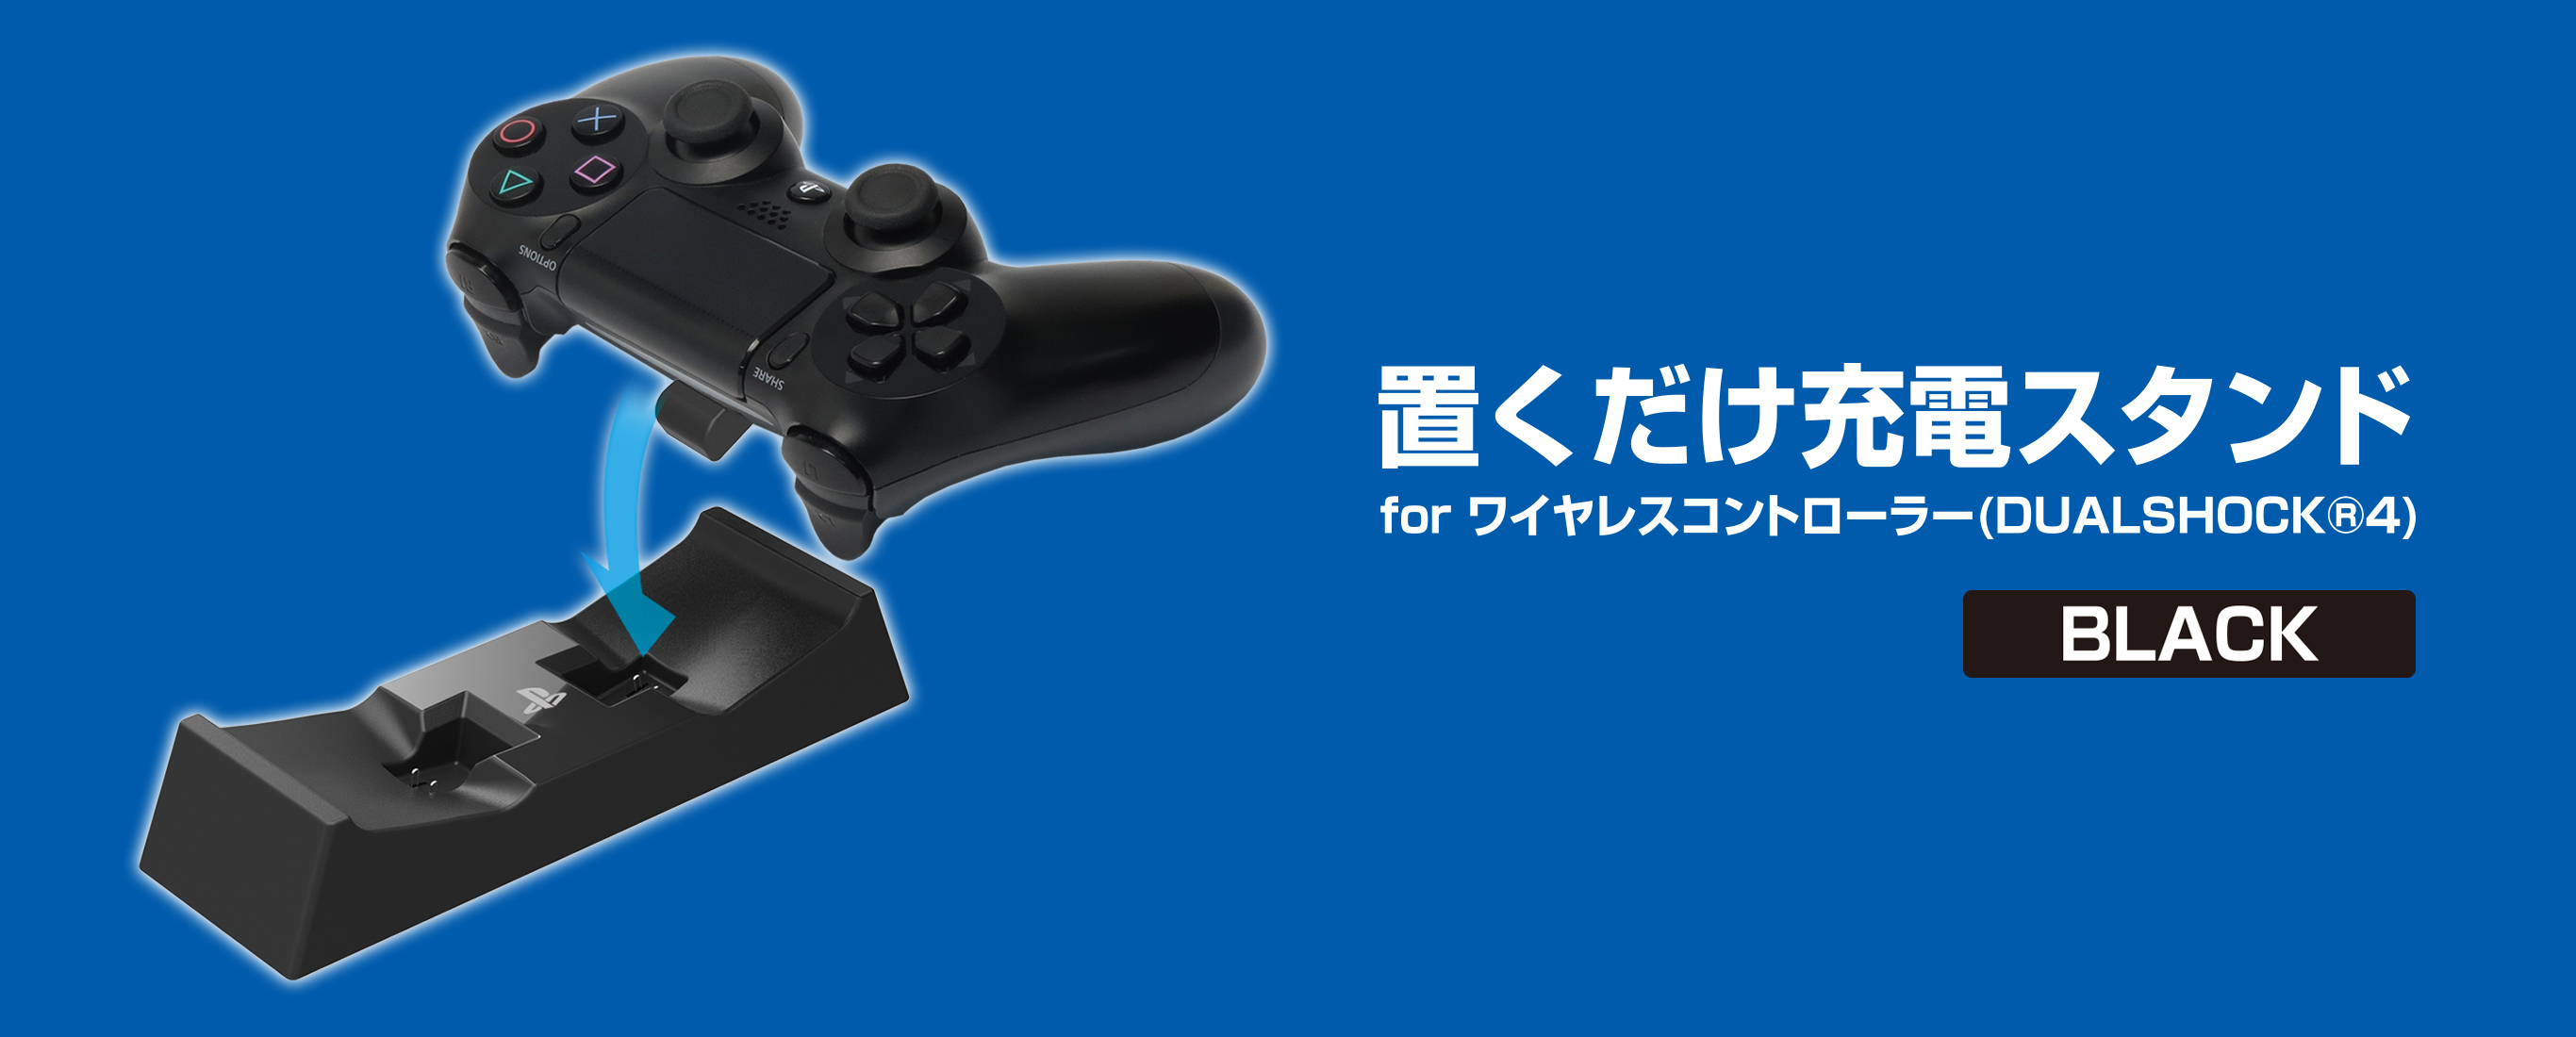 株式会社 Hori 置くだけ充電スタンド For ワイヤレスコントローラー Dualshock 4 ブラック